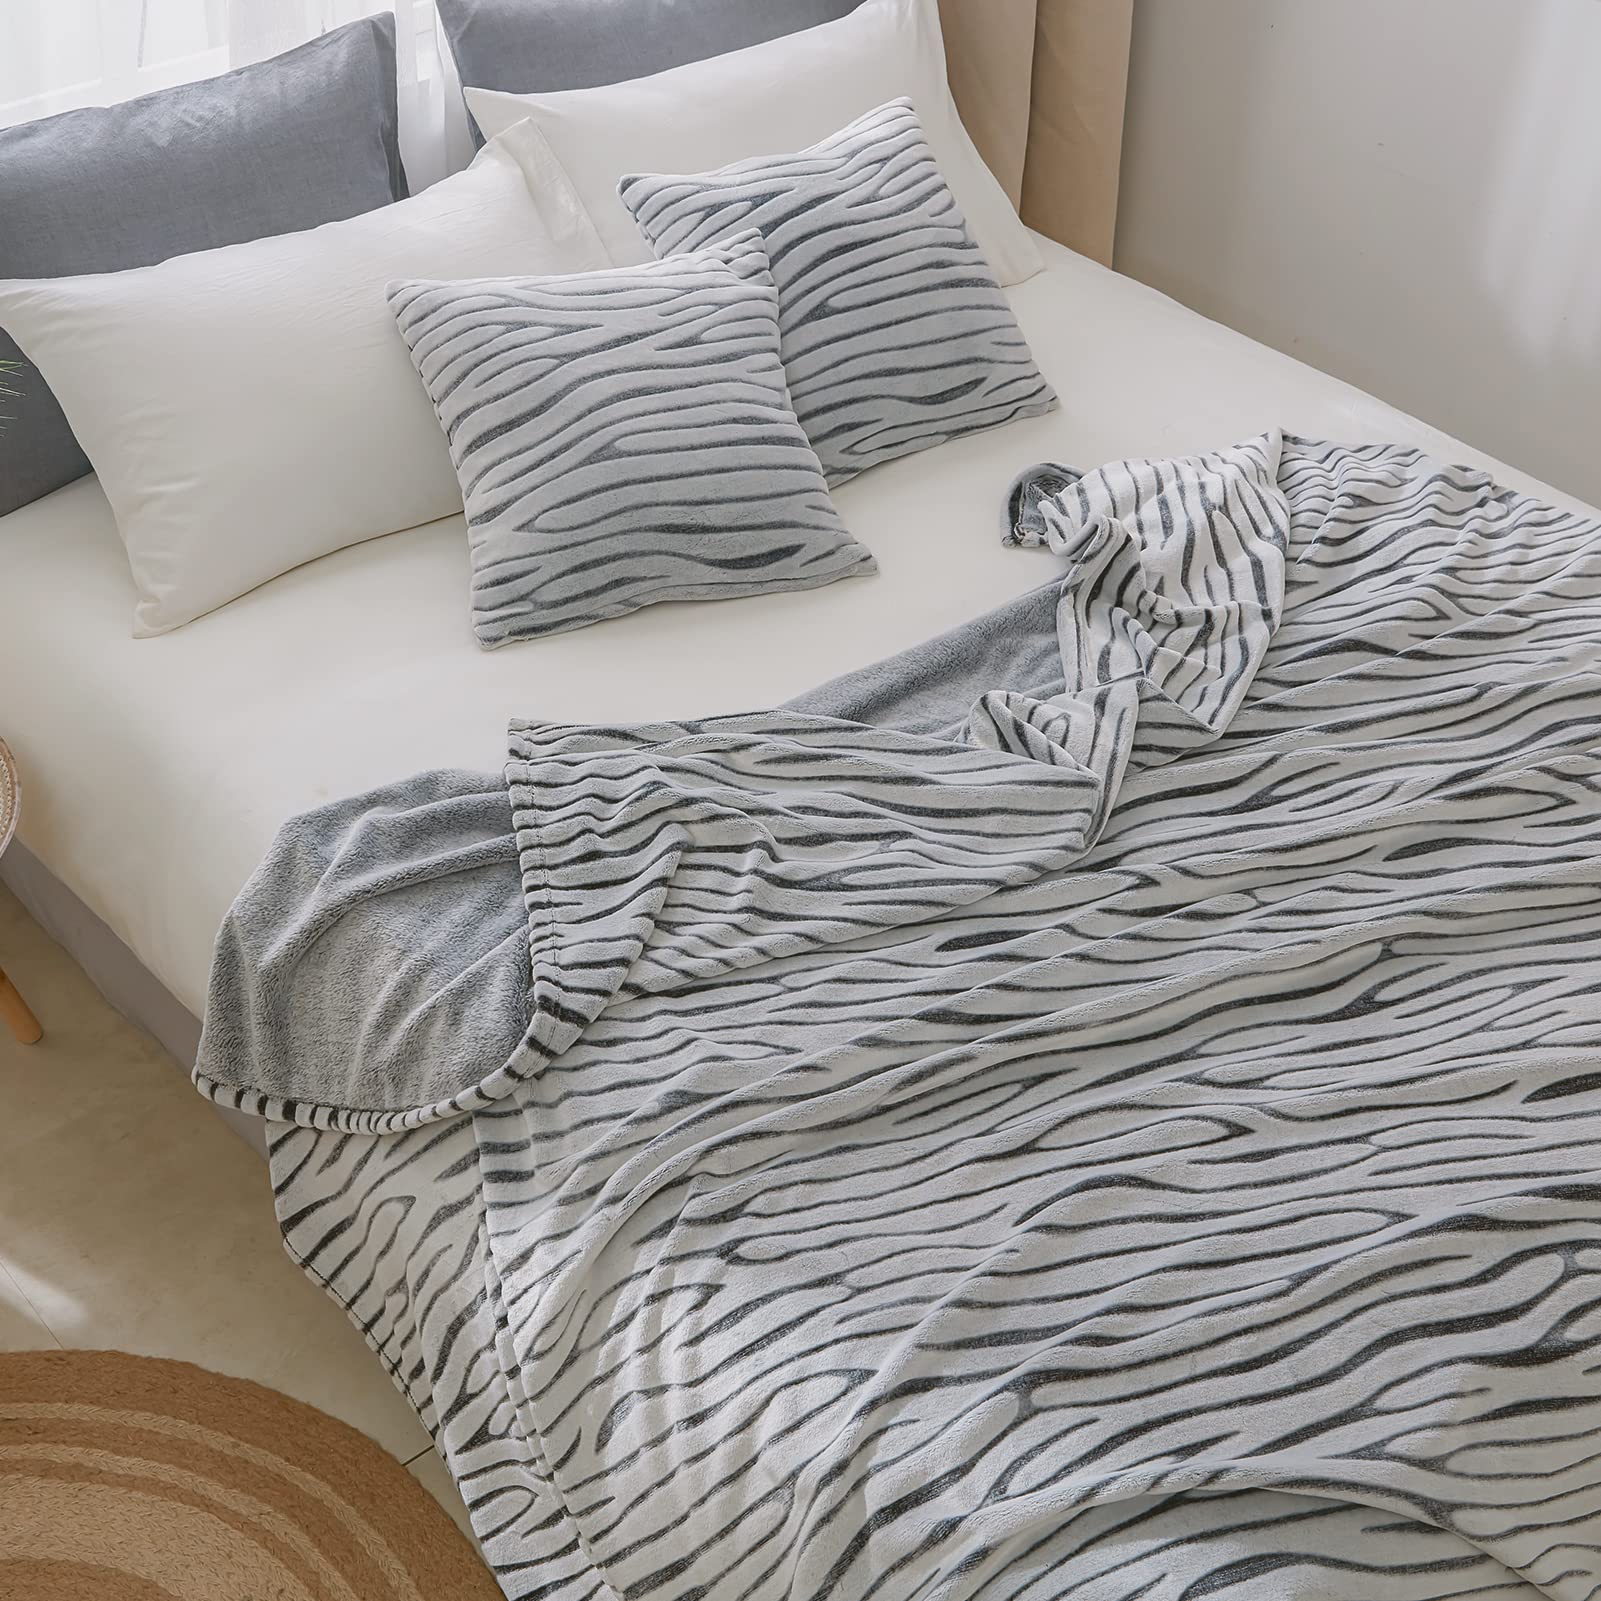 Flannel Fleece Throw Blanket -Zebra Print